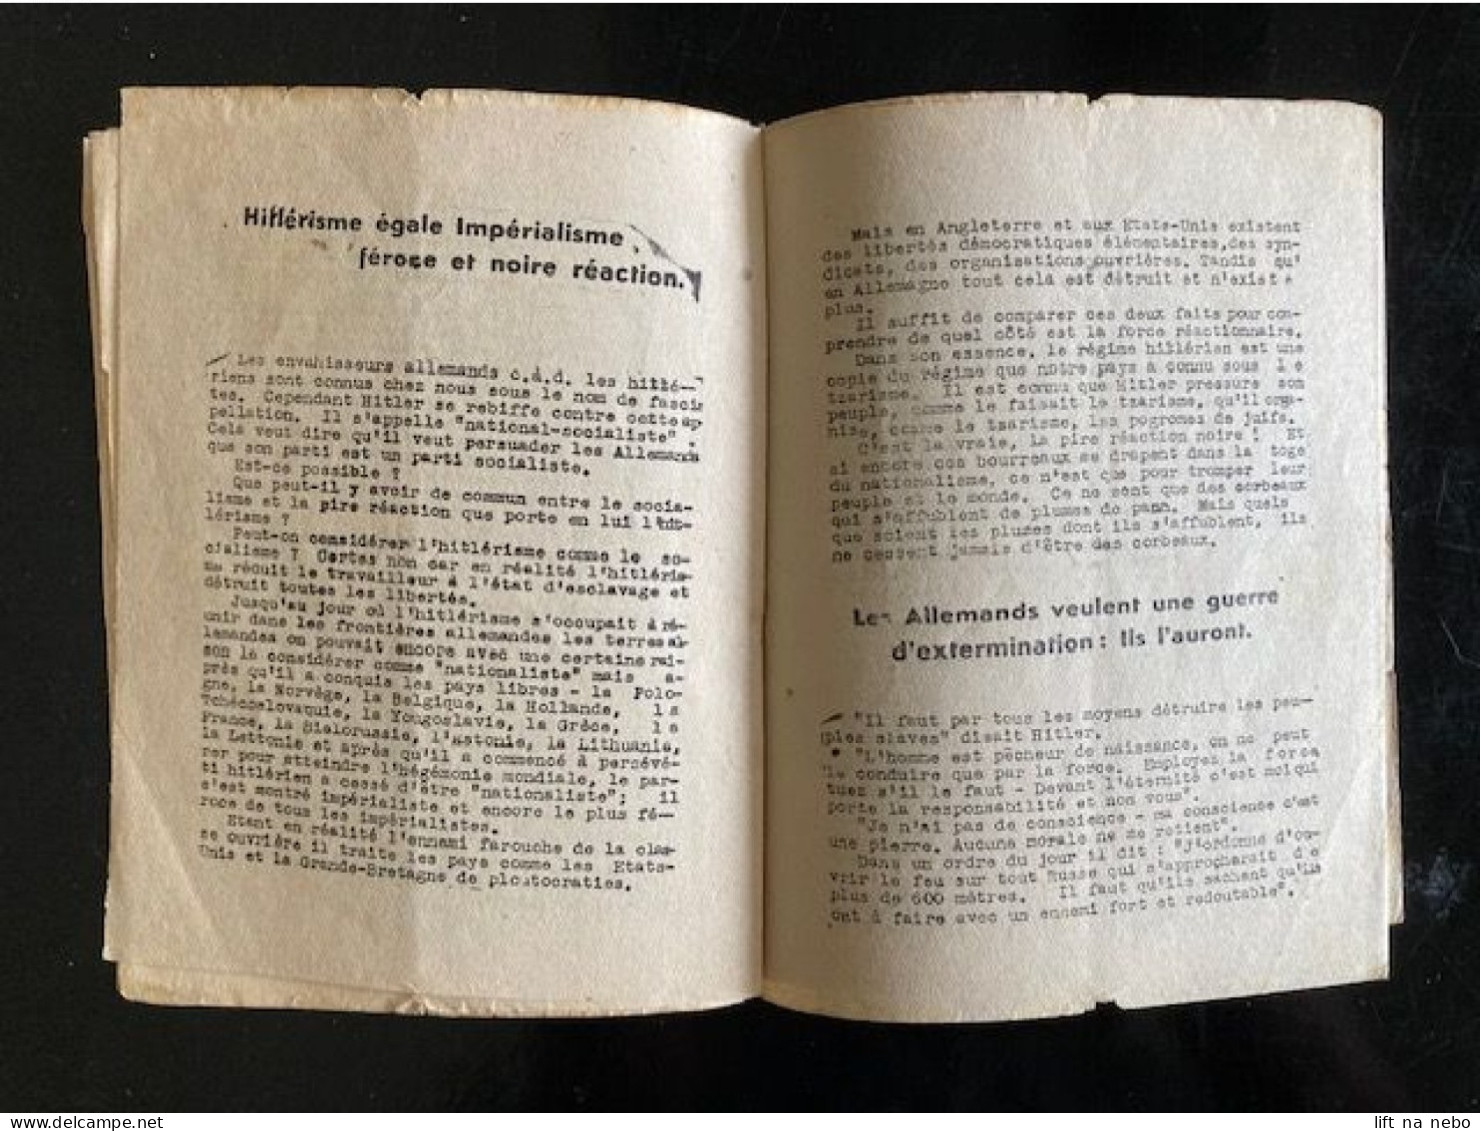 Tract Presse Clandestine Résistance Belge WWII WW2 J.Staline 'La victoire sera à nous!' brochure 16 pages